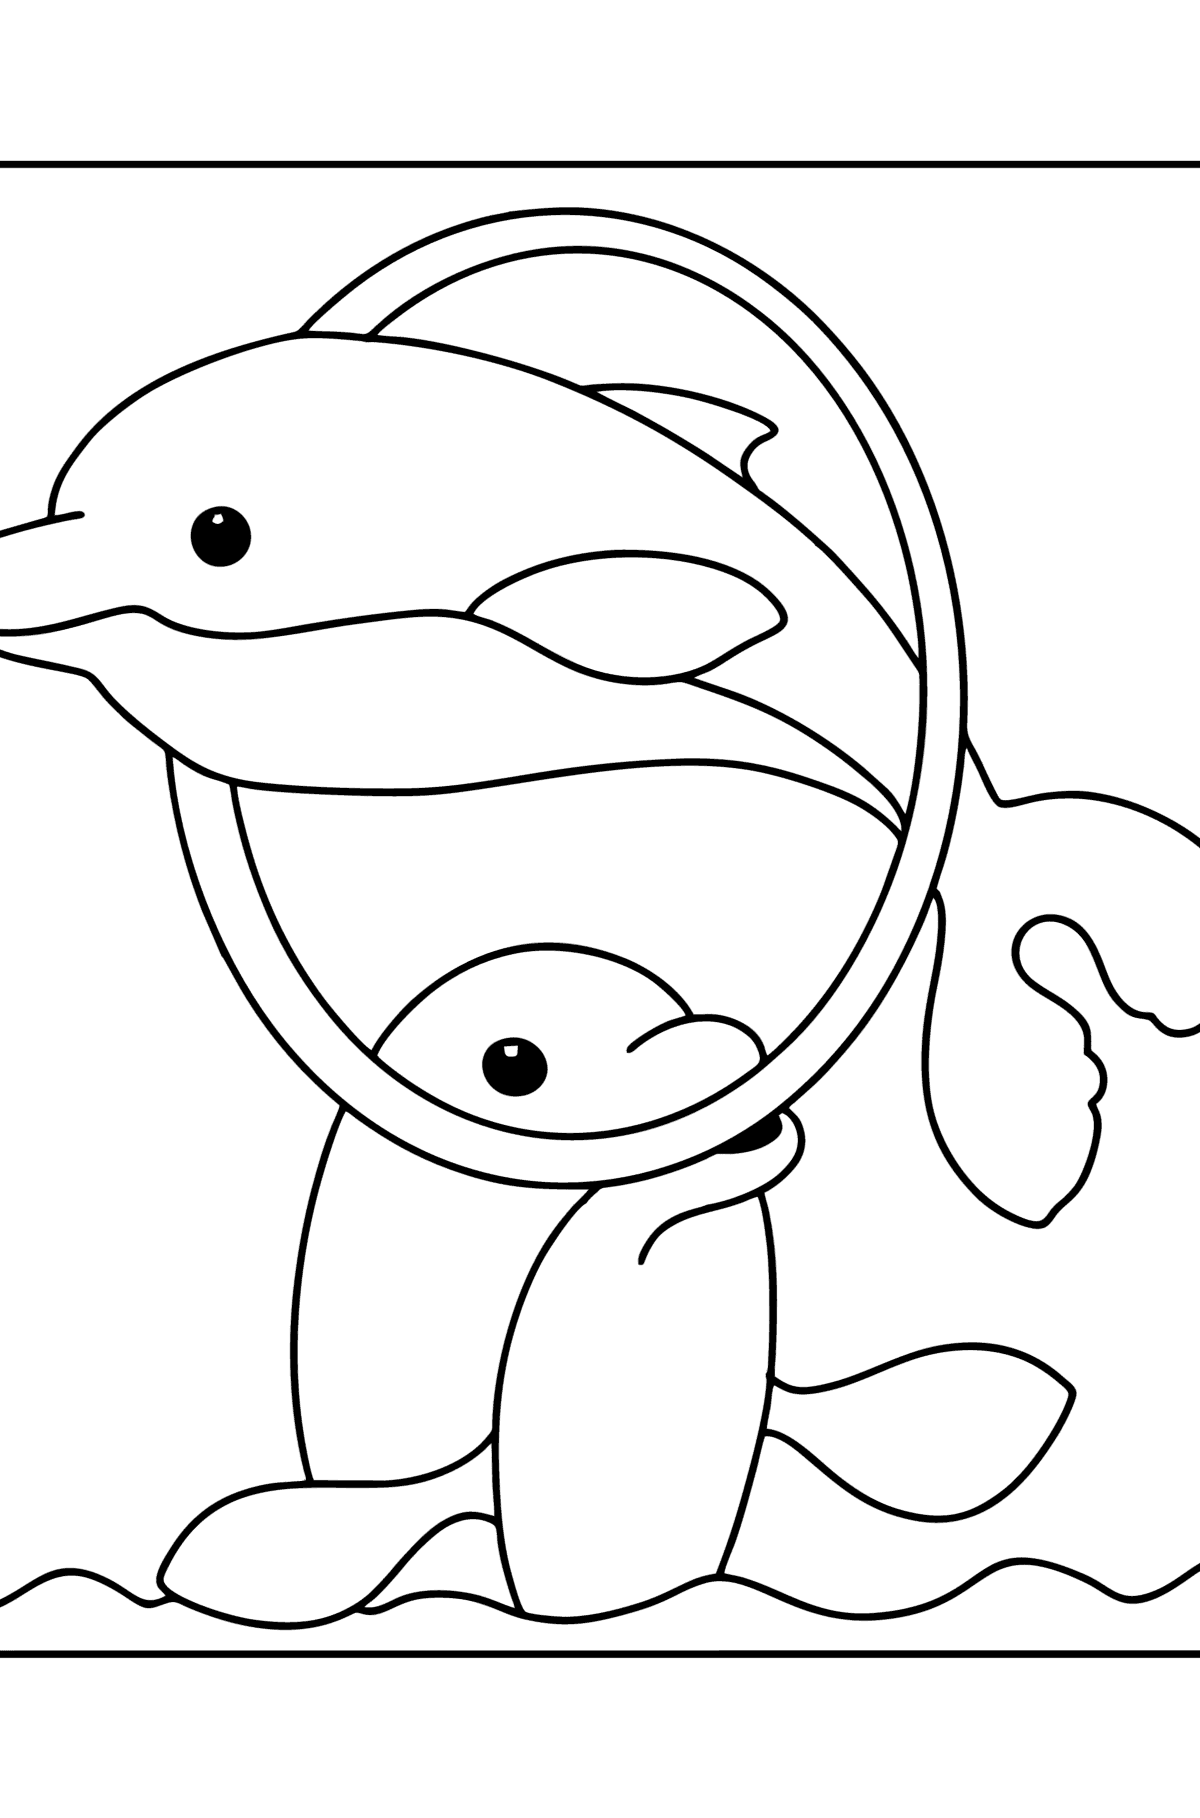 Раскраска Дельфины в воде - Картинки для Детей